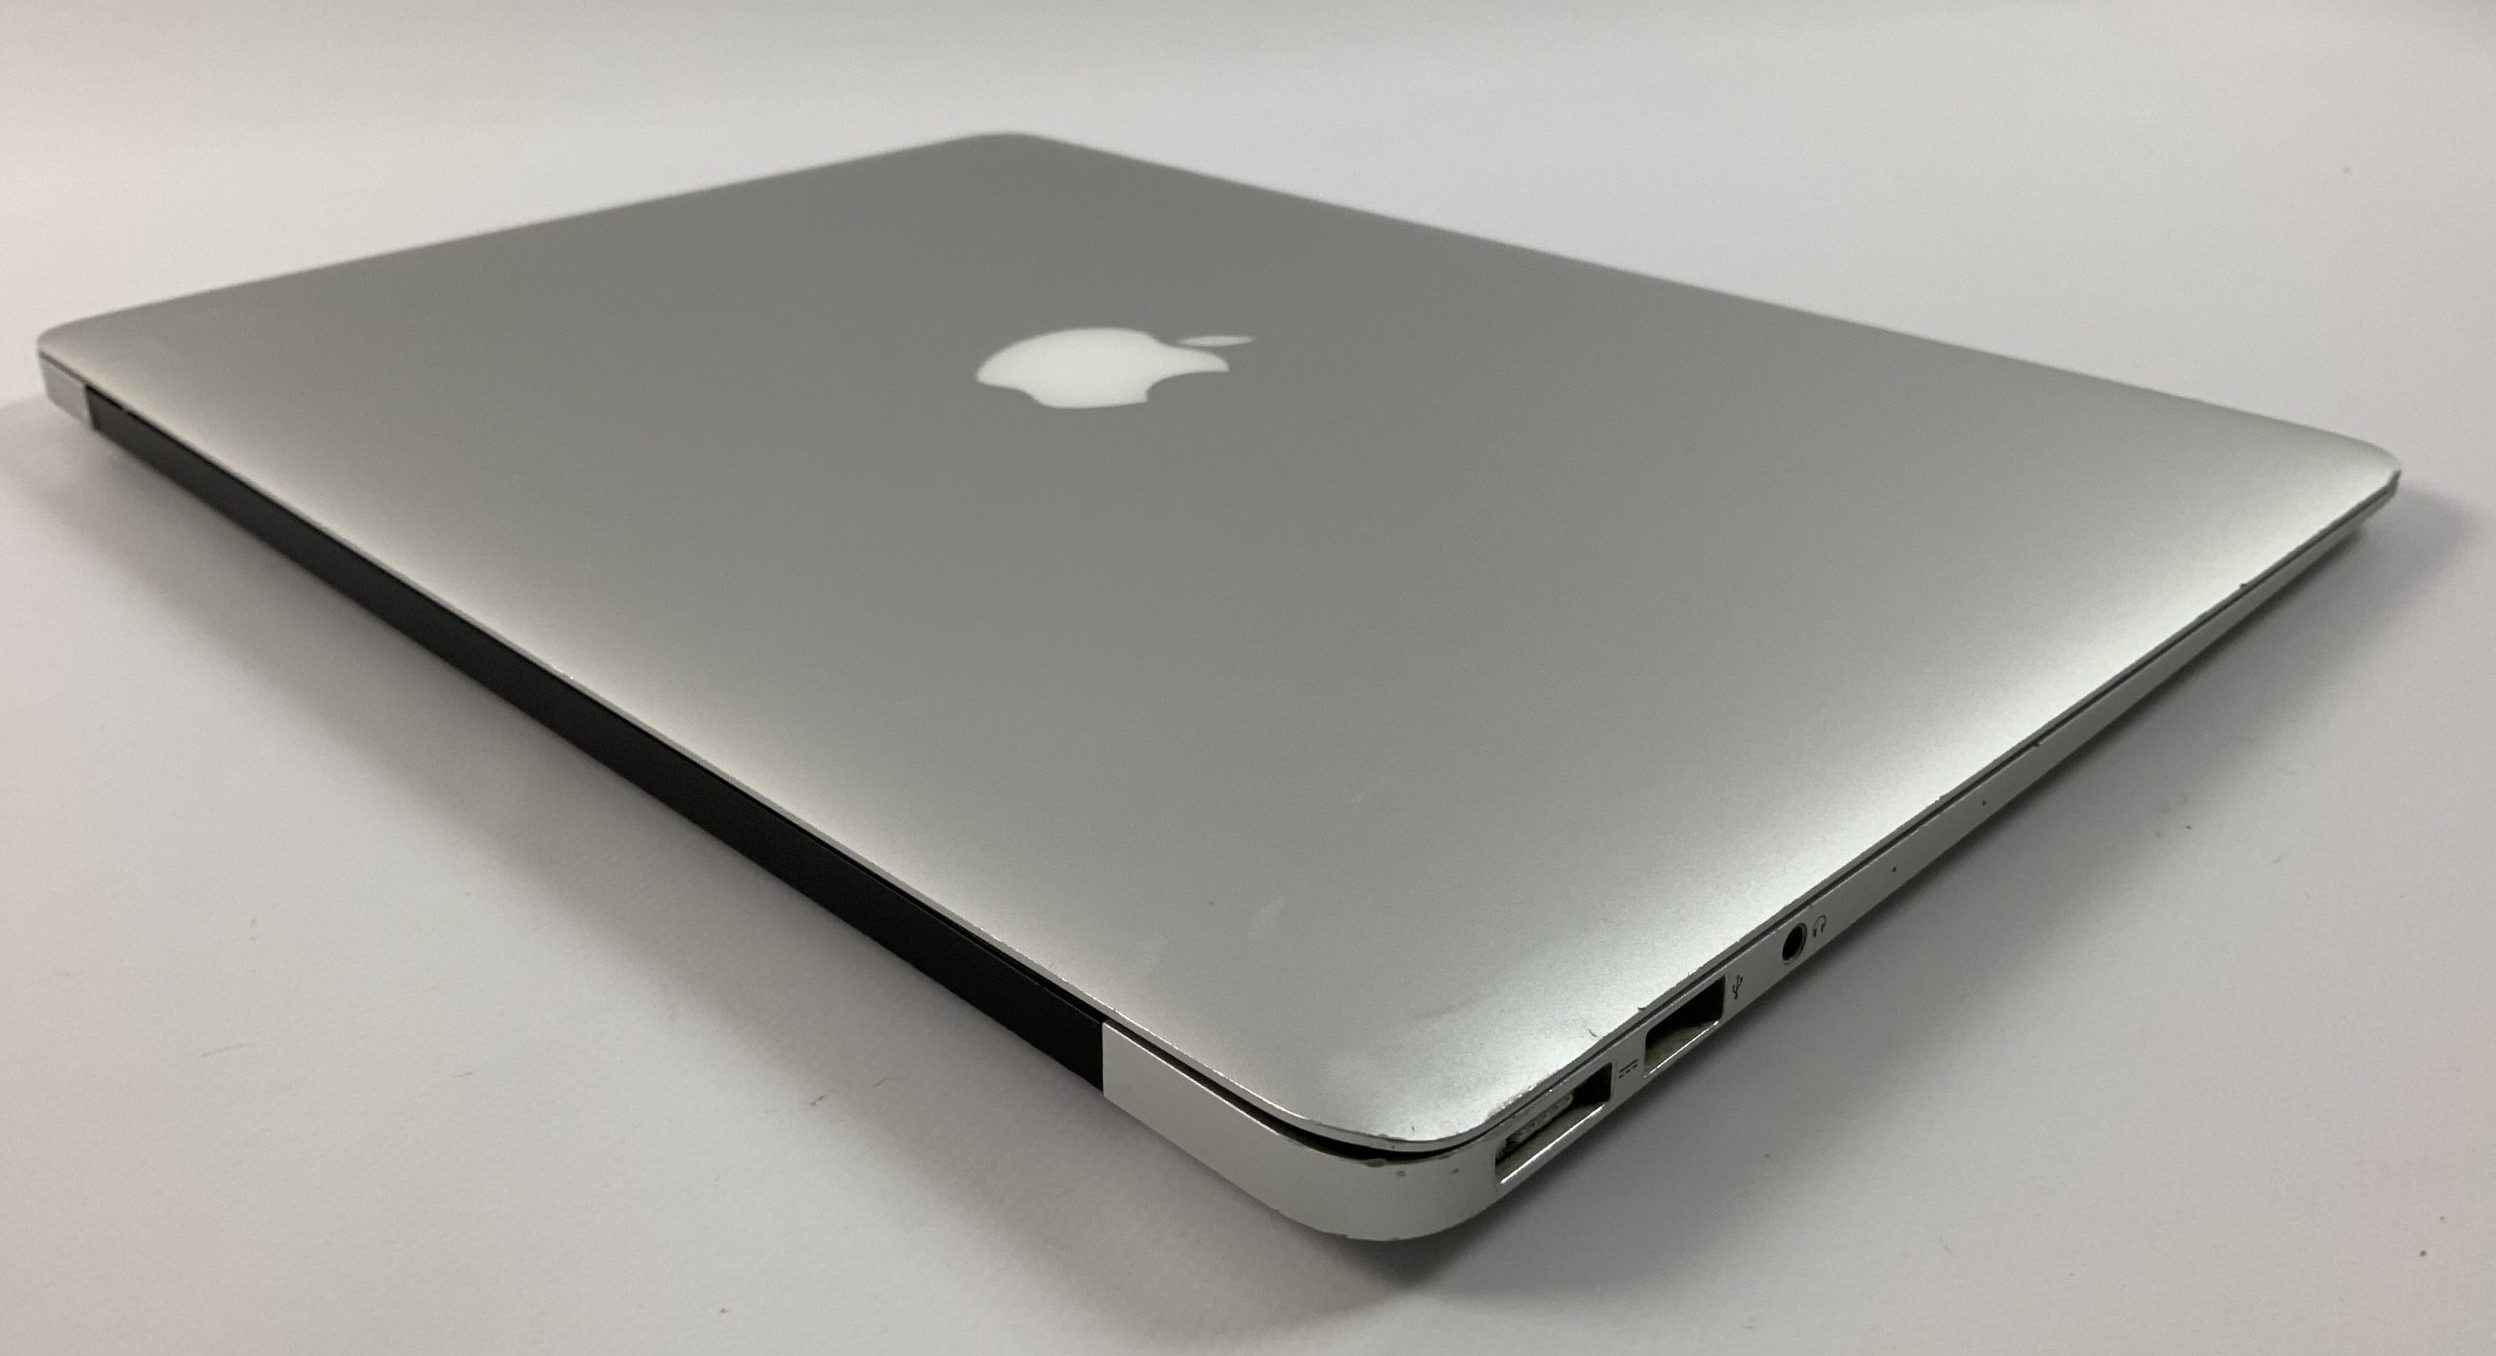 MacBook Air 13" Mid 2017 (Intel Core i5 1.8 GHz 8 GB RAM 256 GB SSD), Intel Core i5 1.8 GHz, 8 GB RAM, 256 GB SSD, Afbeelding 4